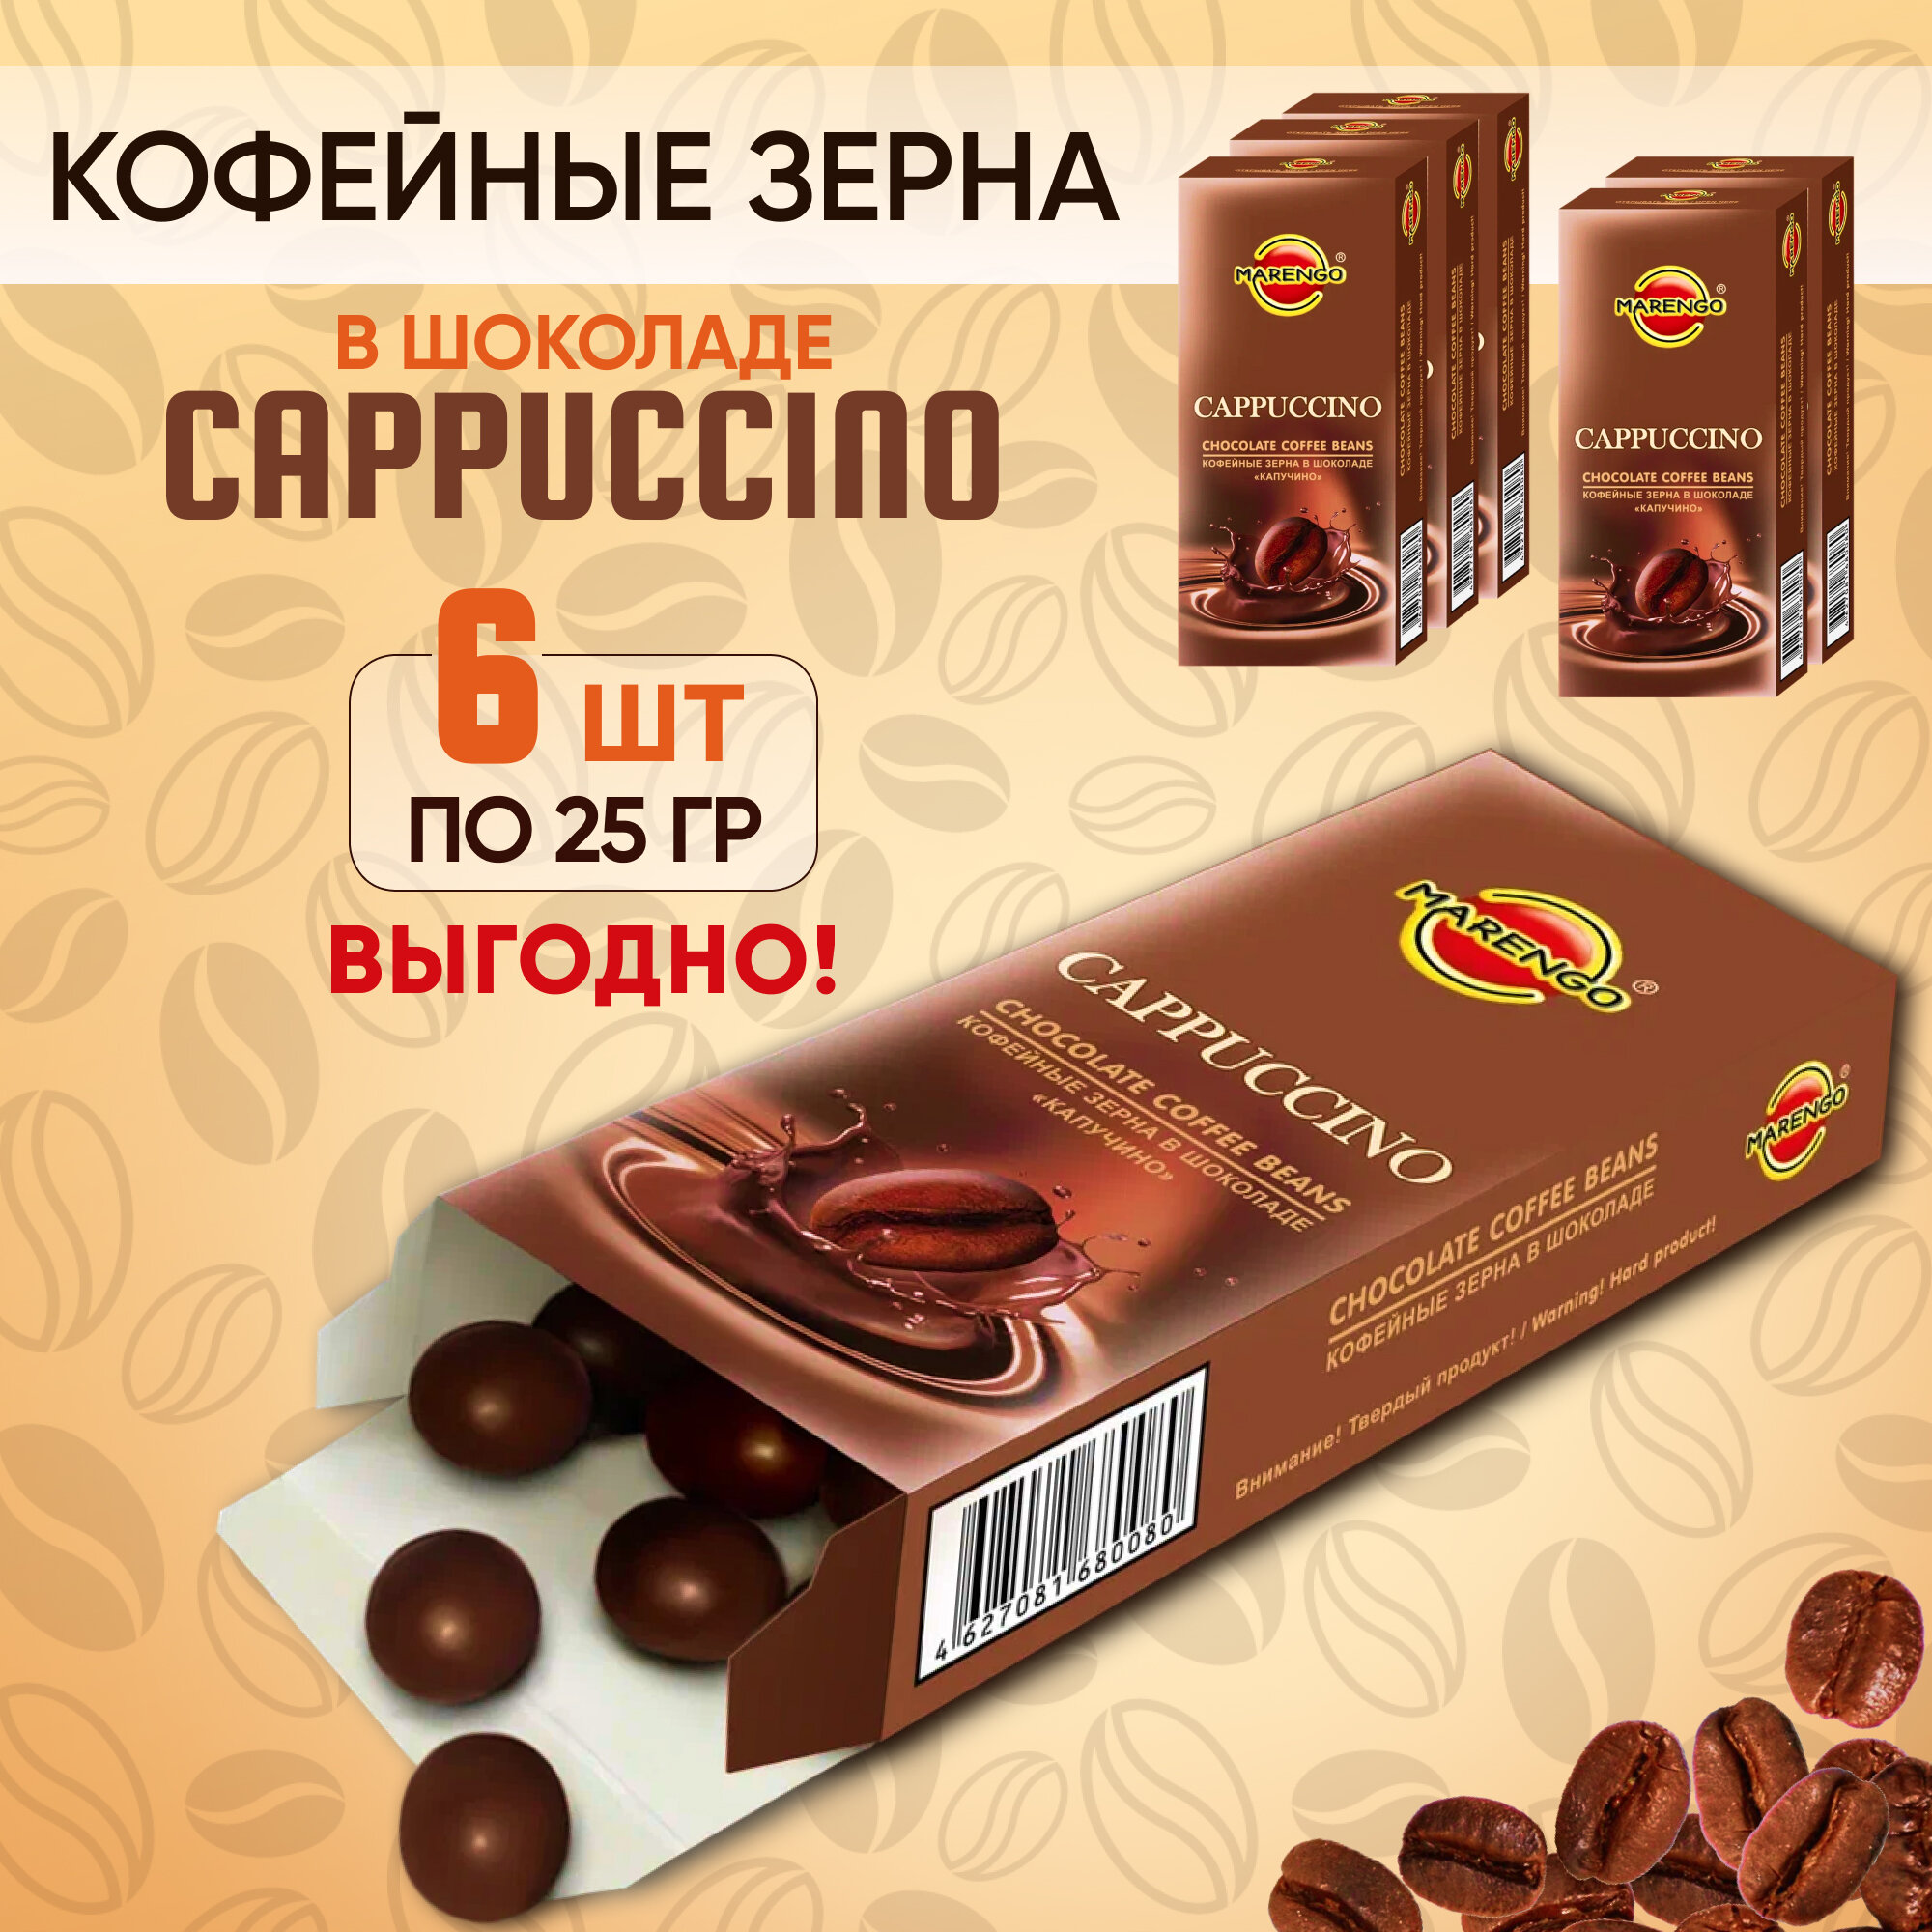 Кофейные зерна в шоколаде /MARENGO/ Cappucino 6шт по 25г